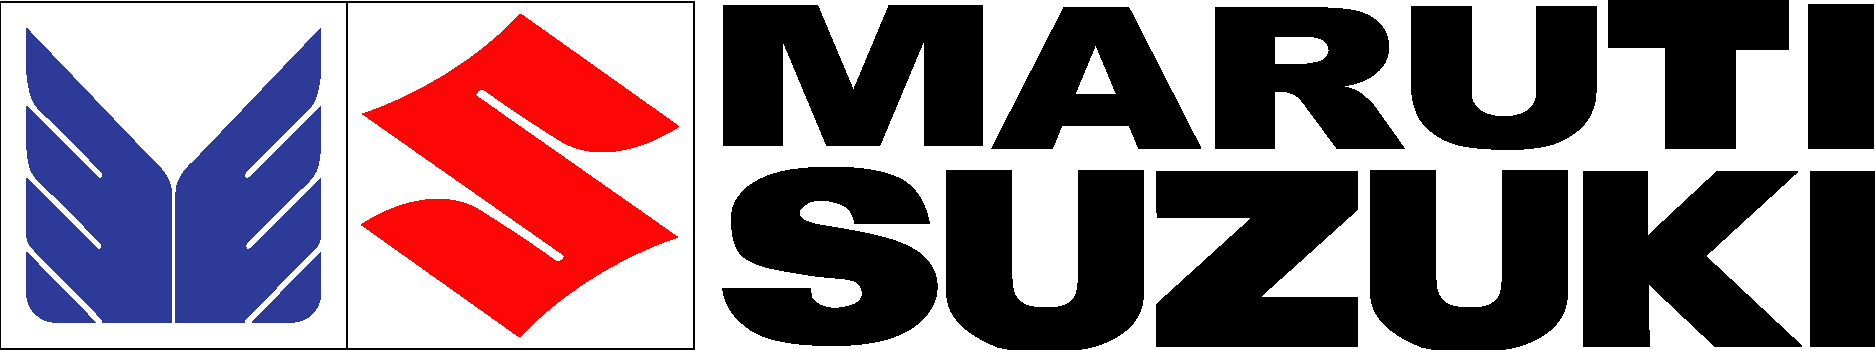 File:Logo for Maruti Suzuki.svg - Wikipedia